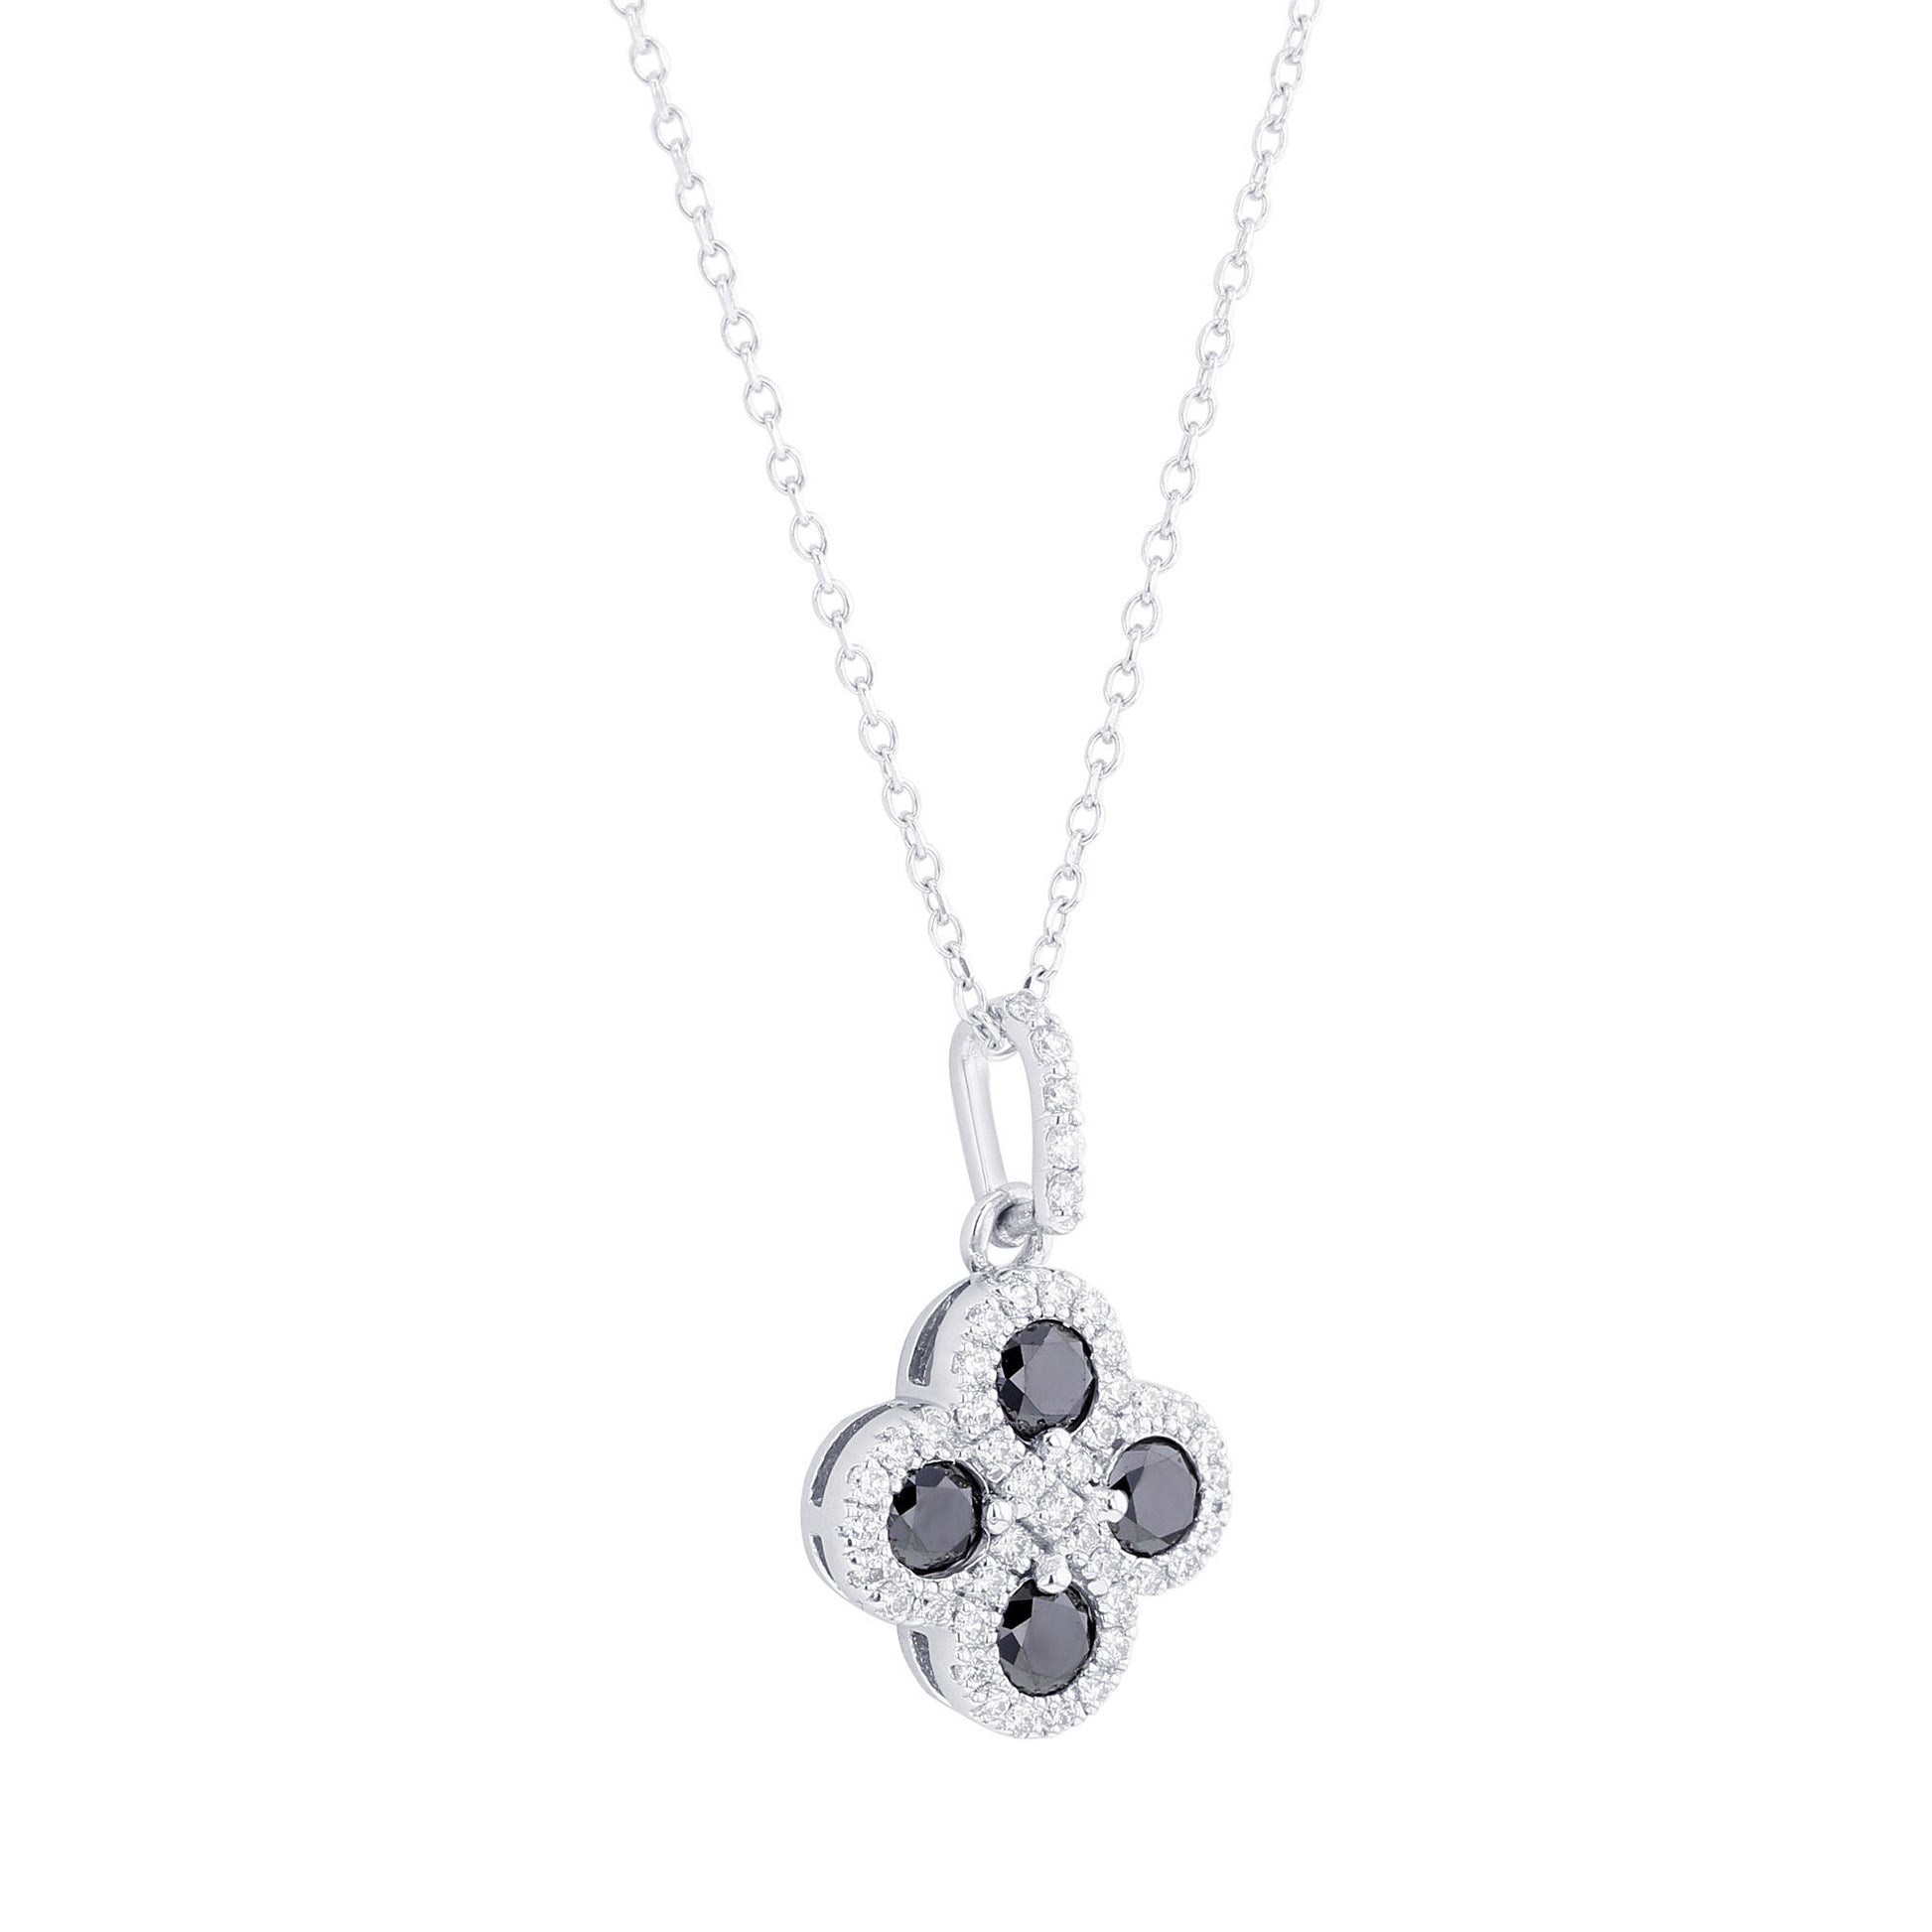 Fortune Black & White Diamond Necklace